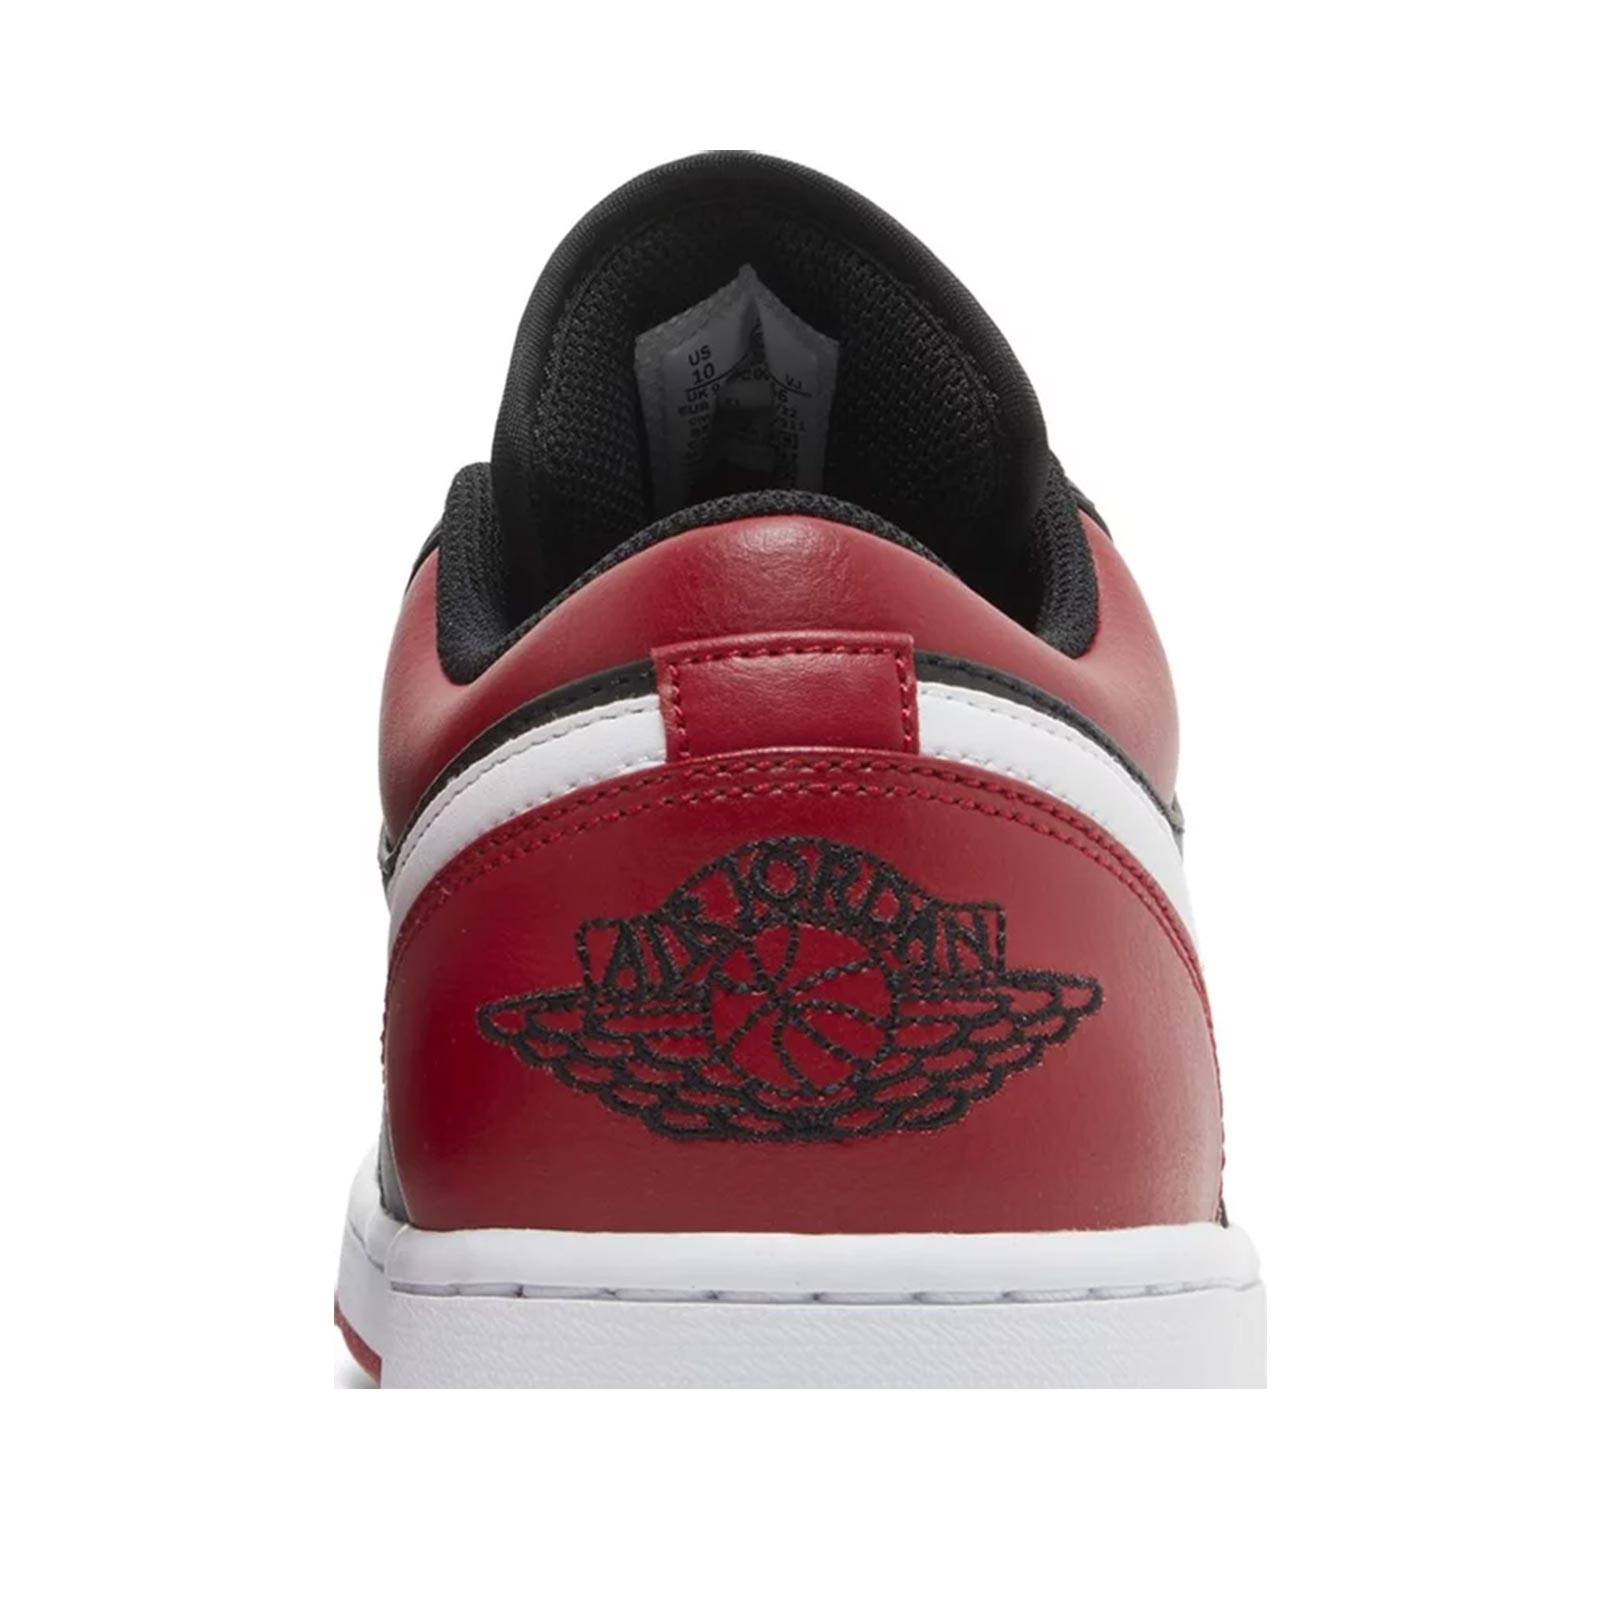 Fire Red 4s Jordan Sneaker Tees Shirts White Spike Lee Skull